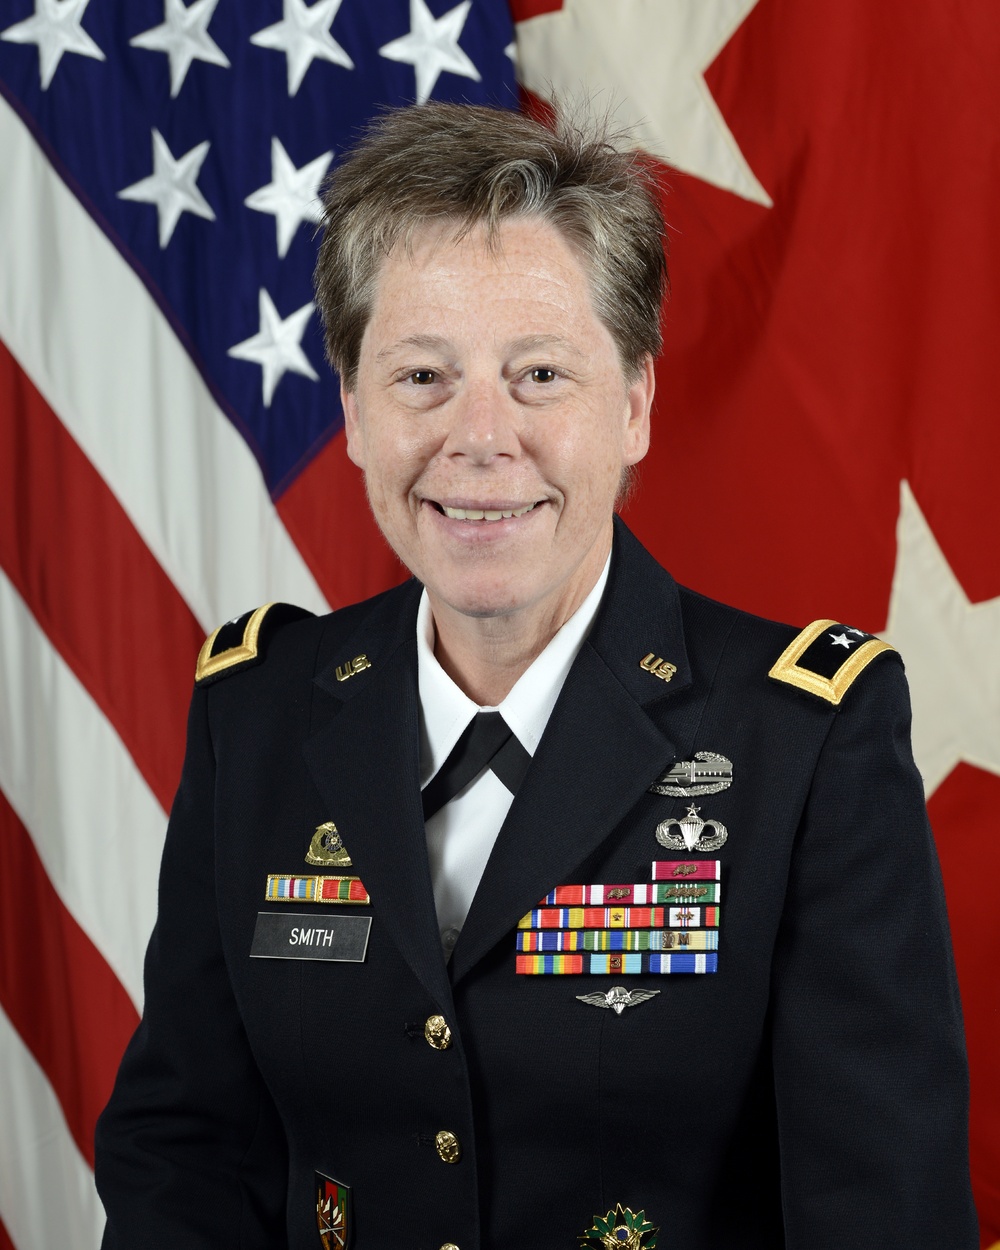 Maj. Gen. Tammy Smith